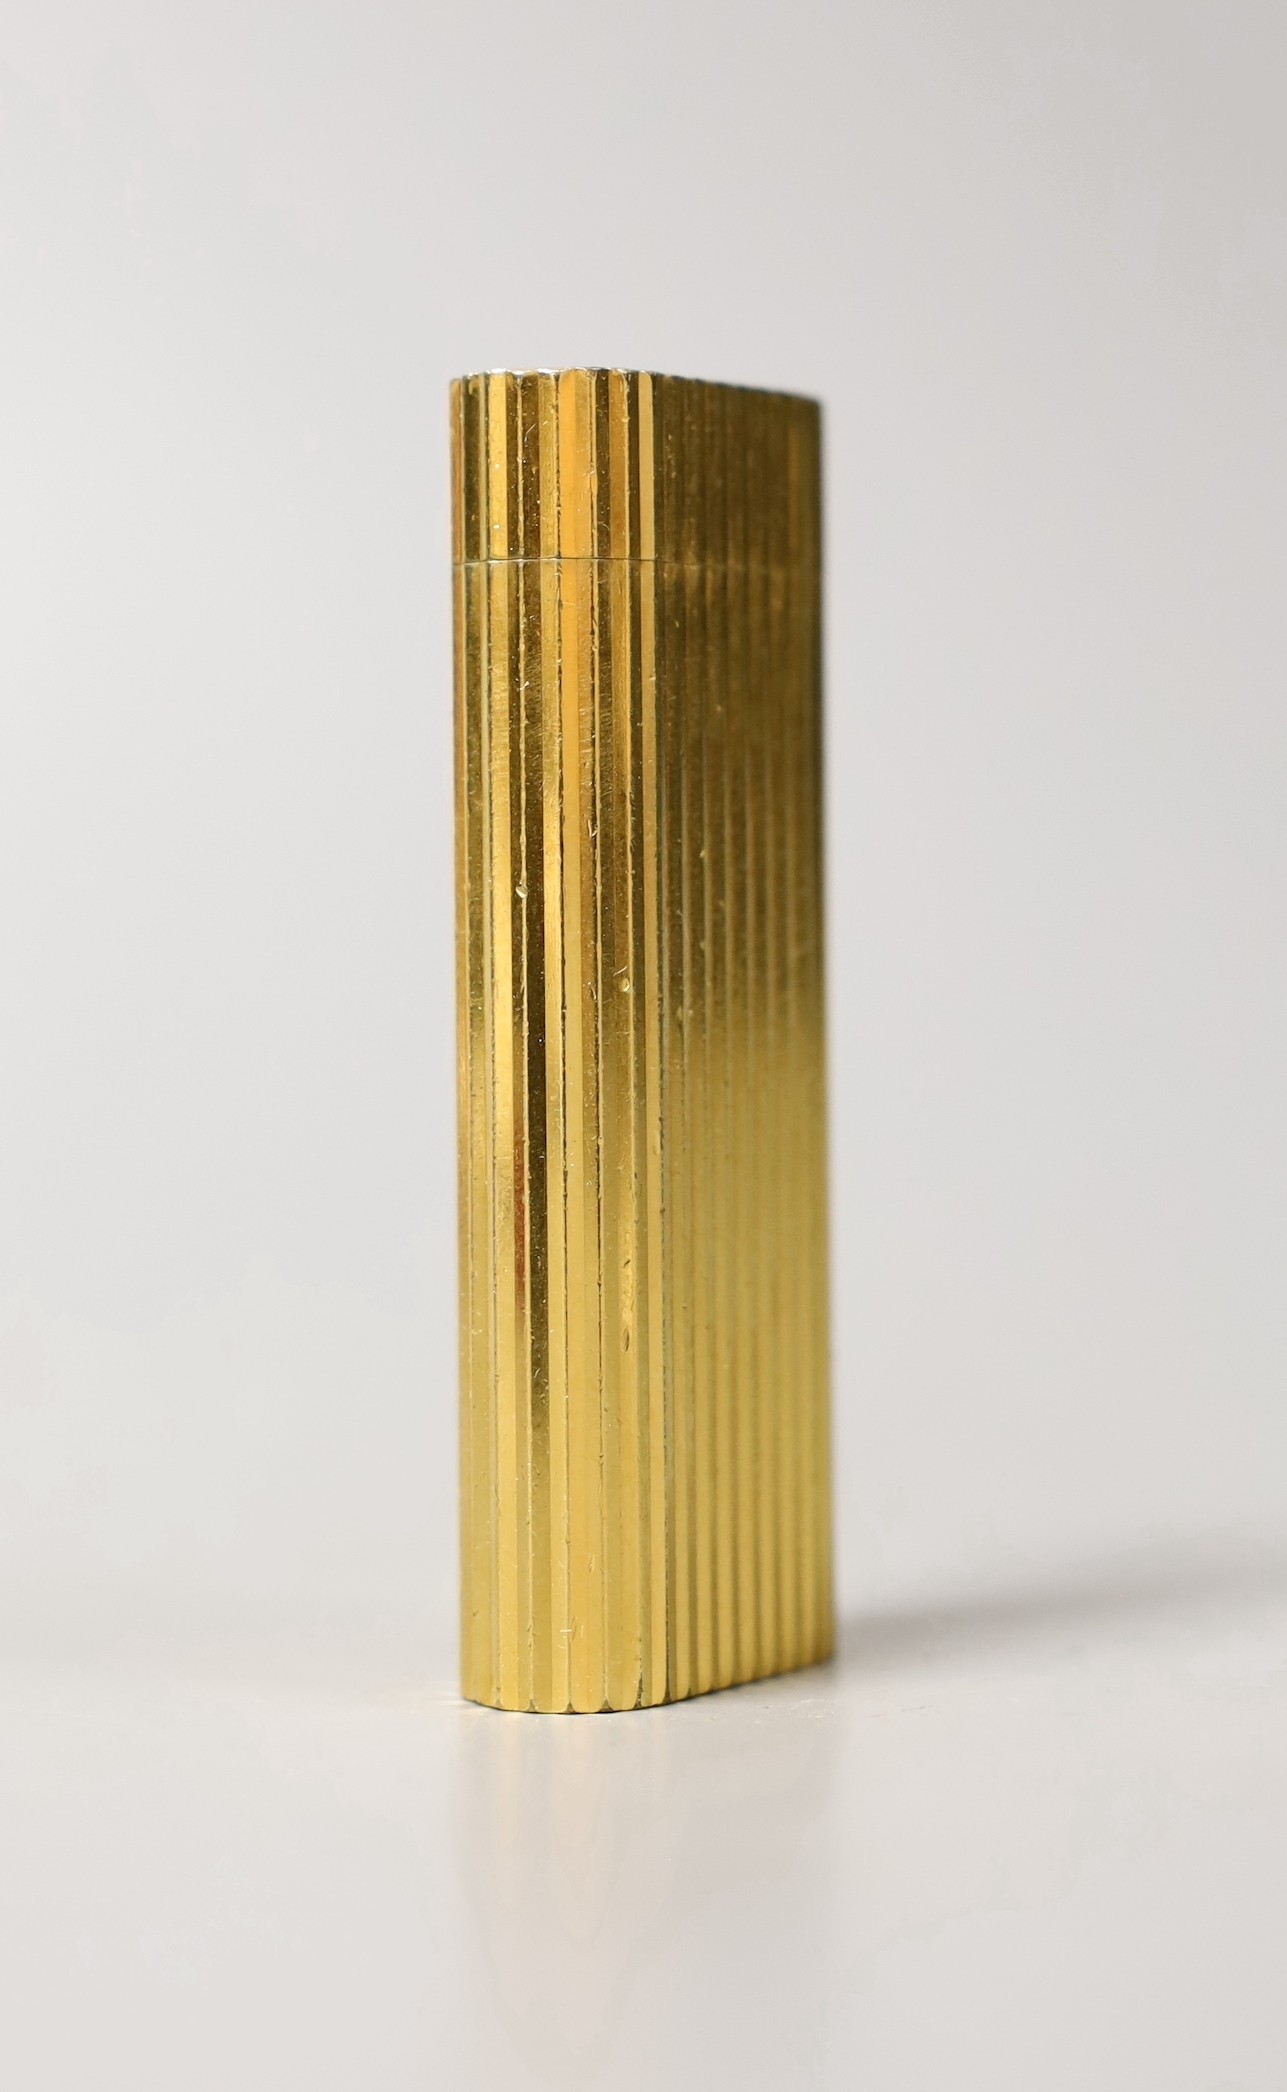 A Must de Cartier gold plated lighter, cased, 7cms long